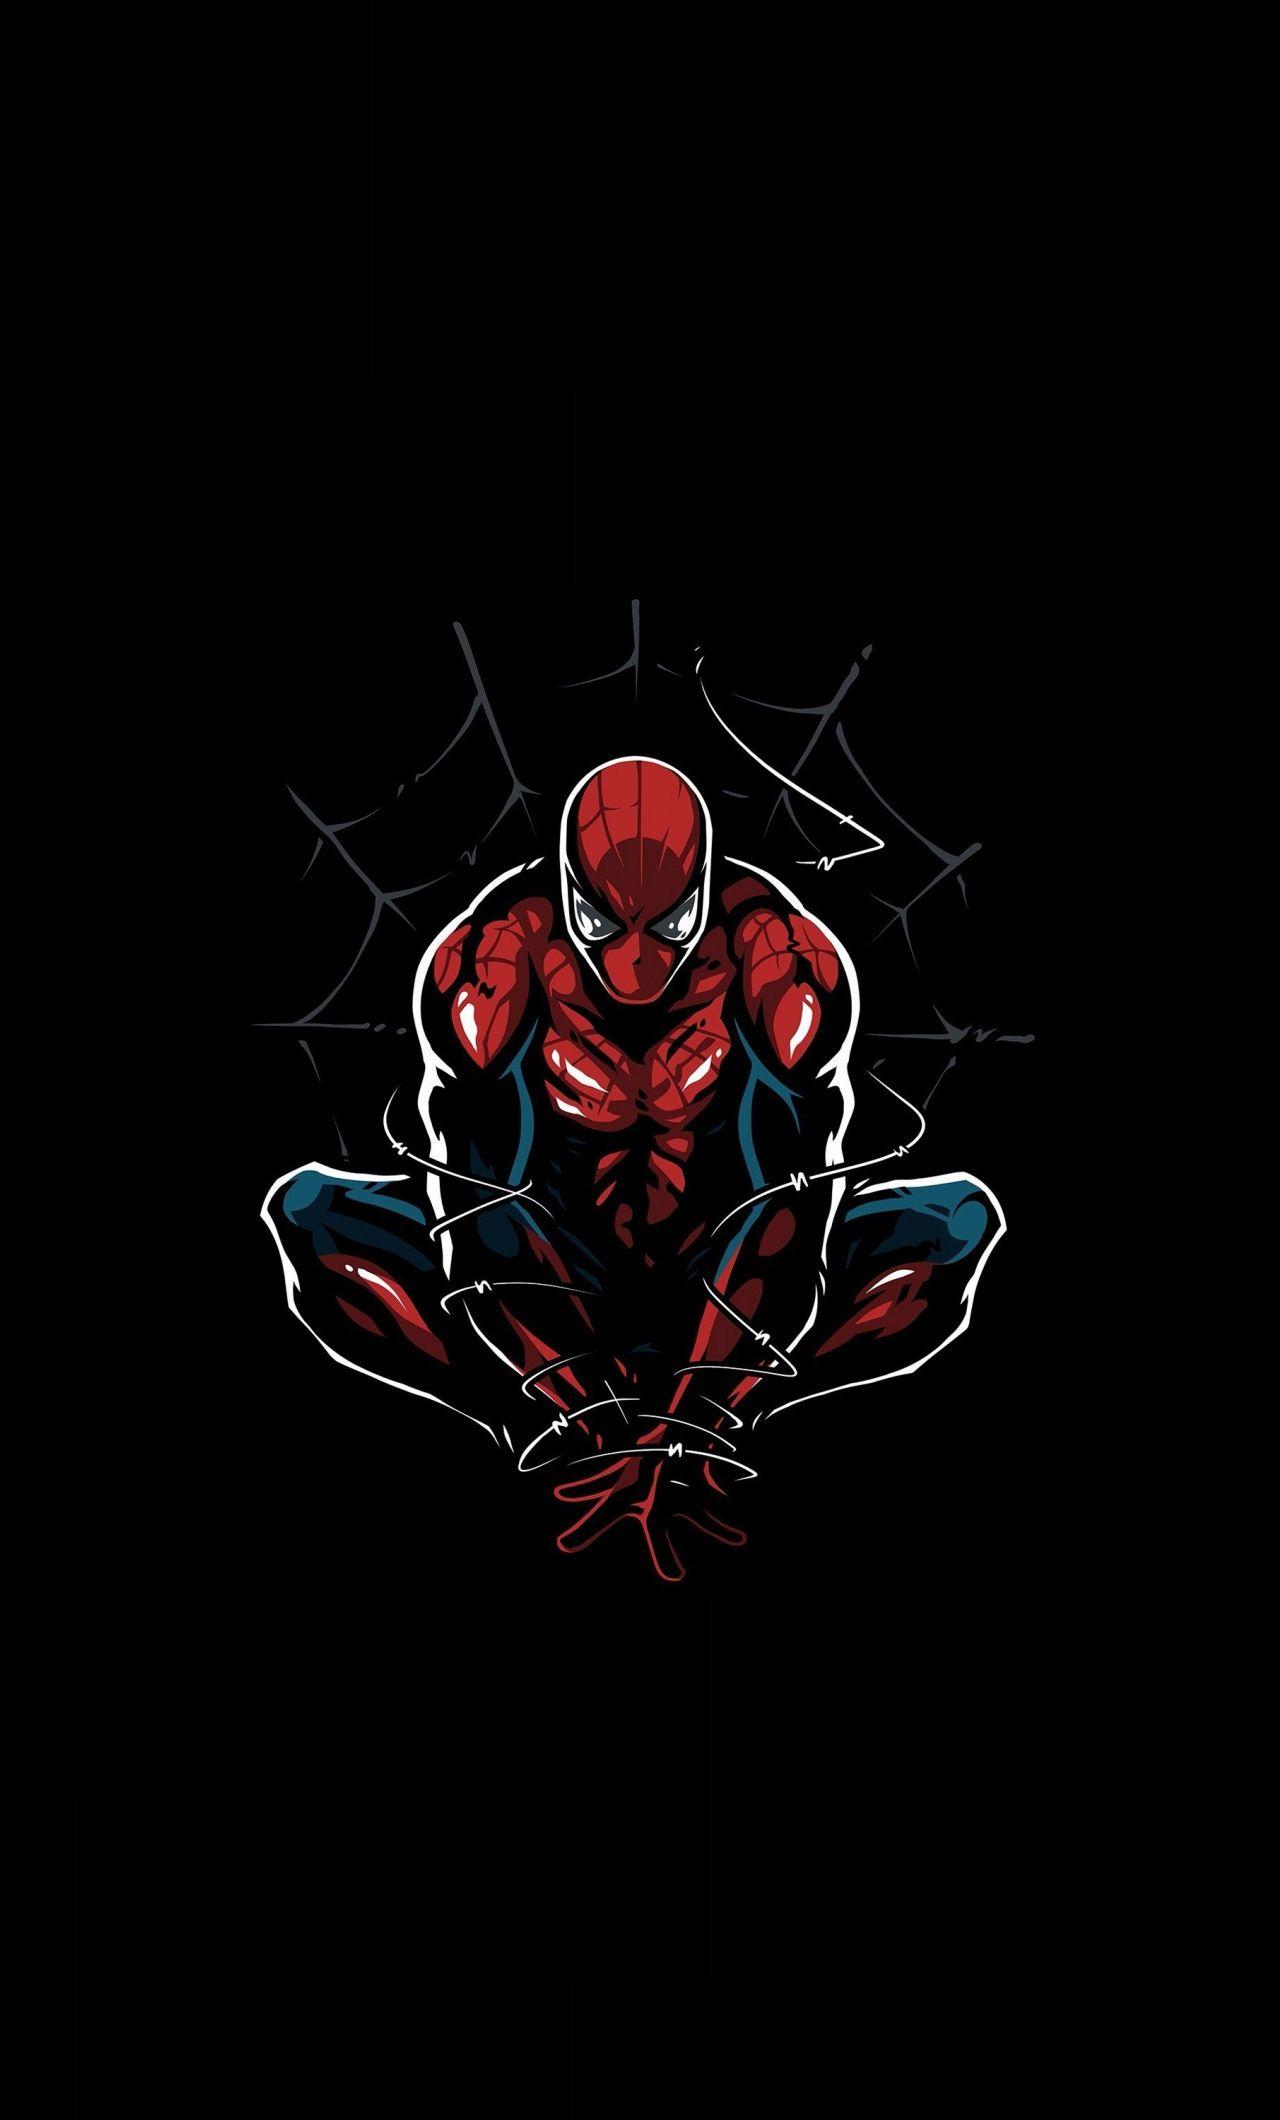 Dark, Spider Man, Minimal, Artwork, 1280x2120 Wallpaper